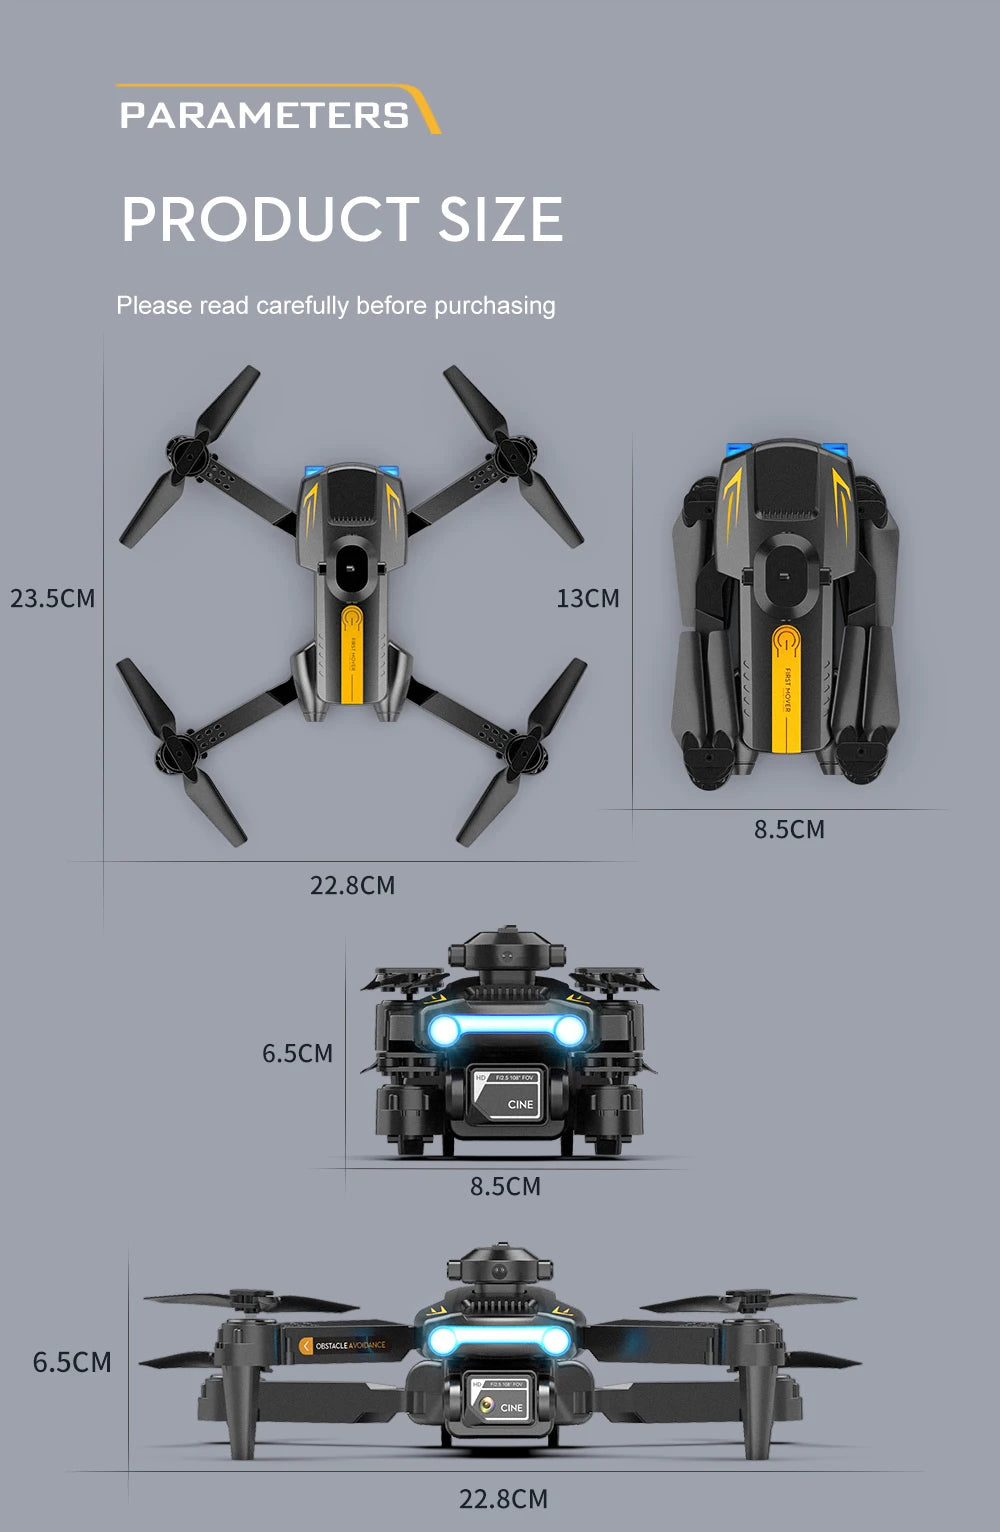 LSRC XT2 Drone, 6.5cm cine 8.5cm cestacleai